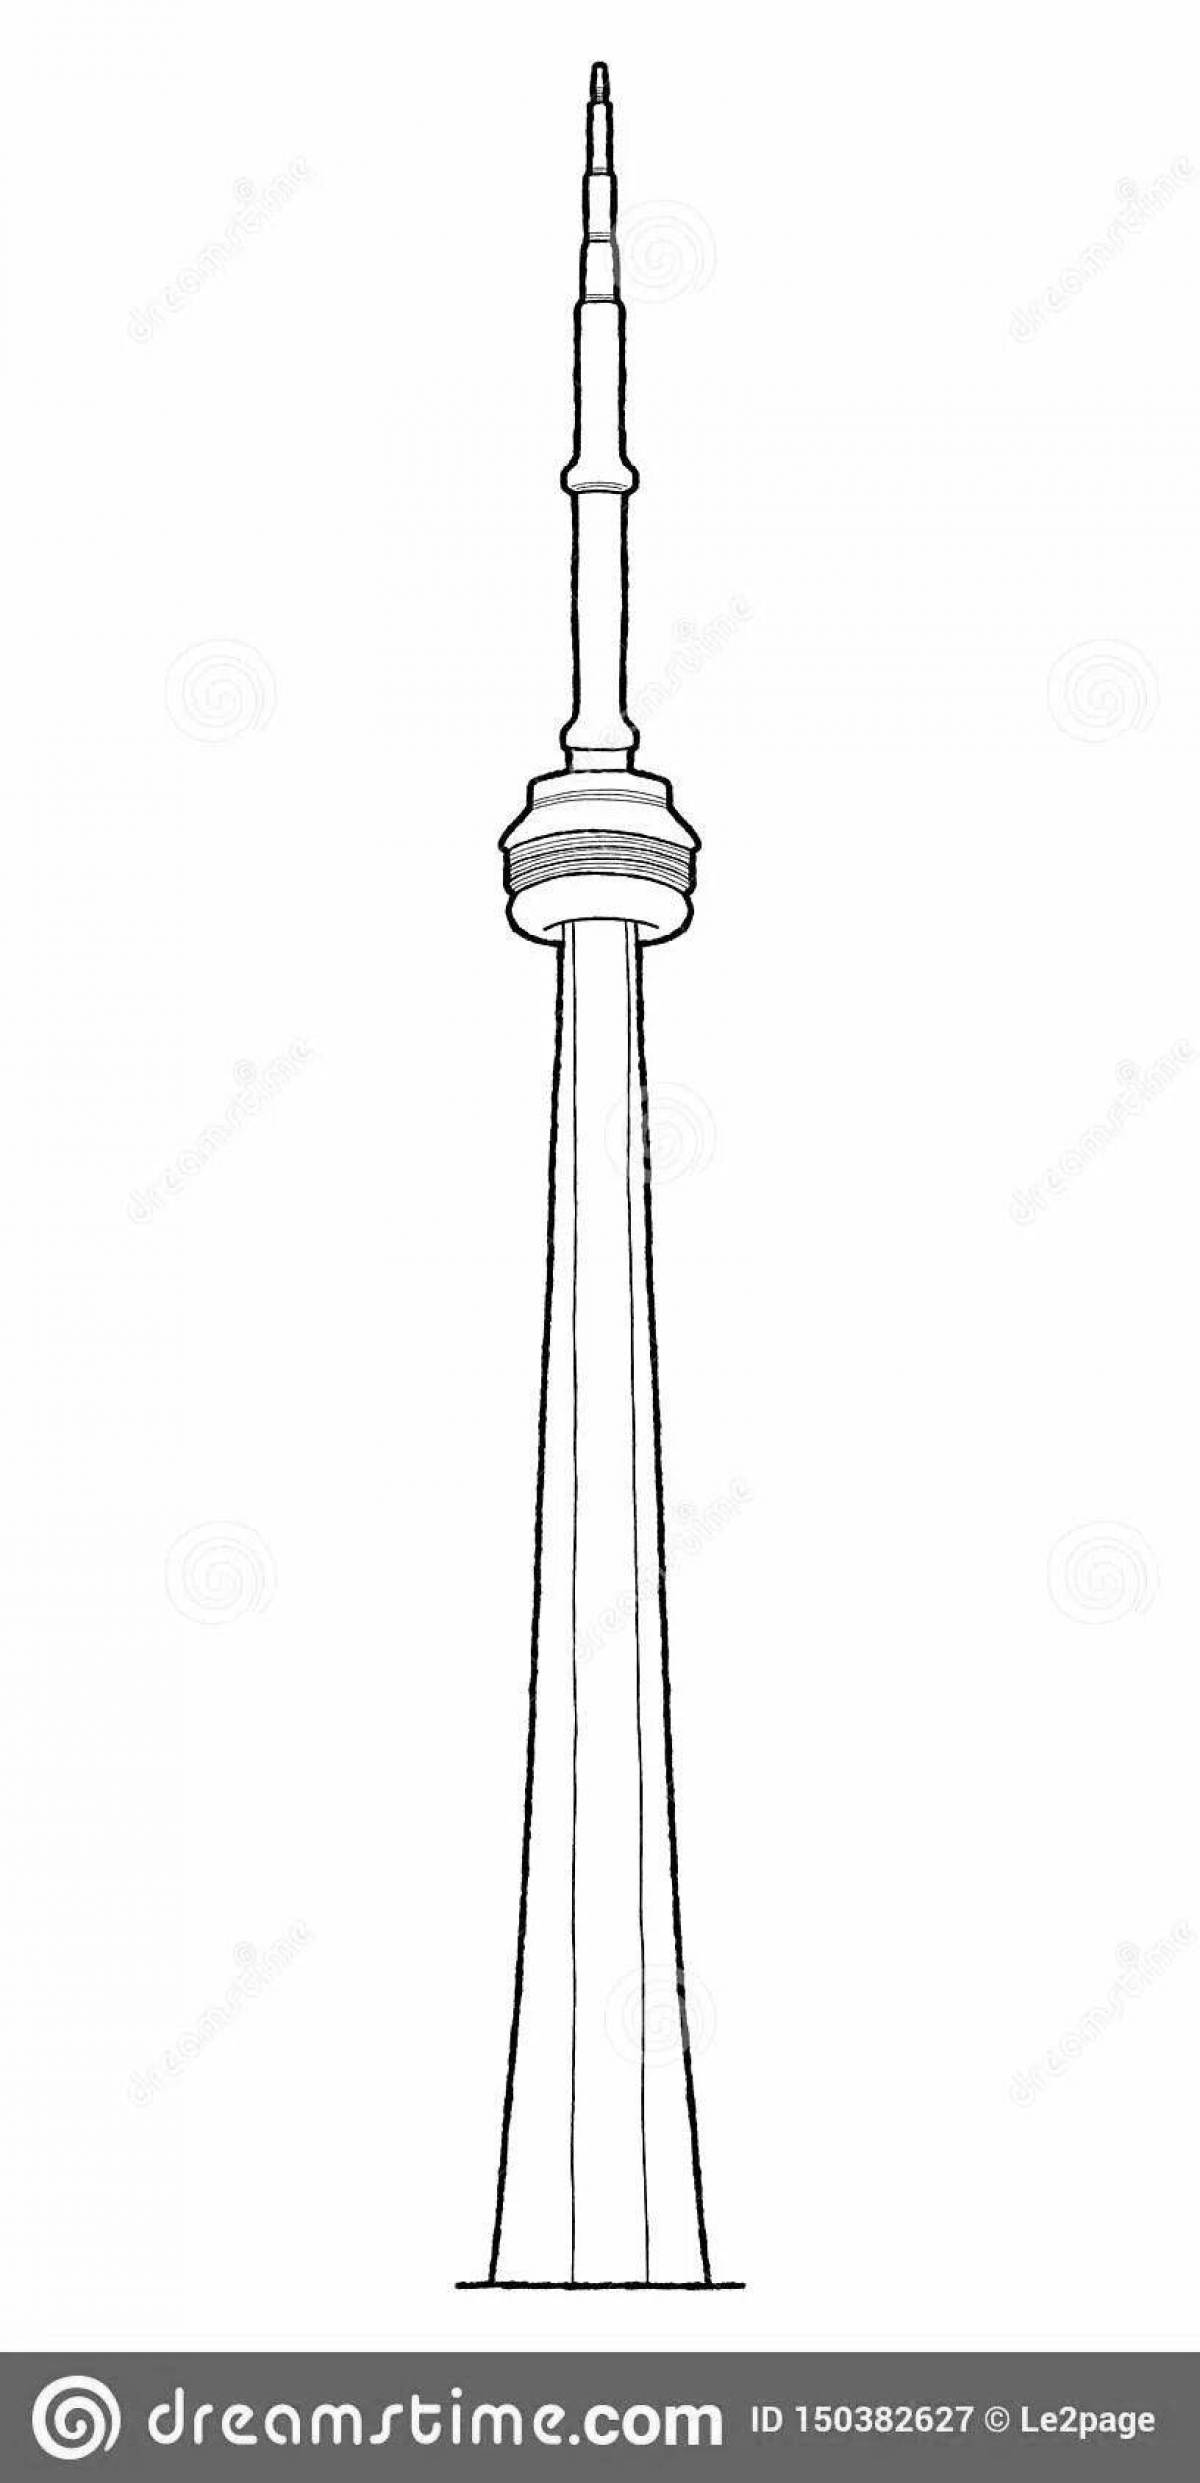 Big coloring CN tower